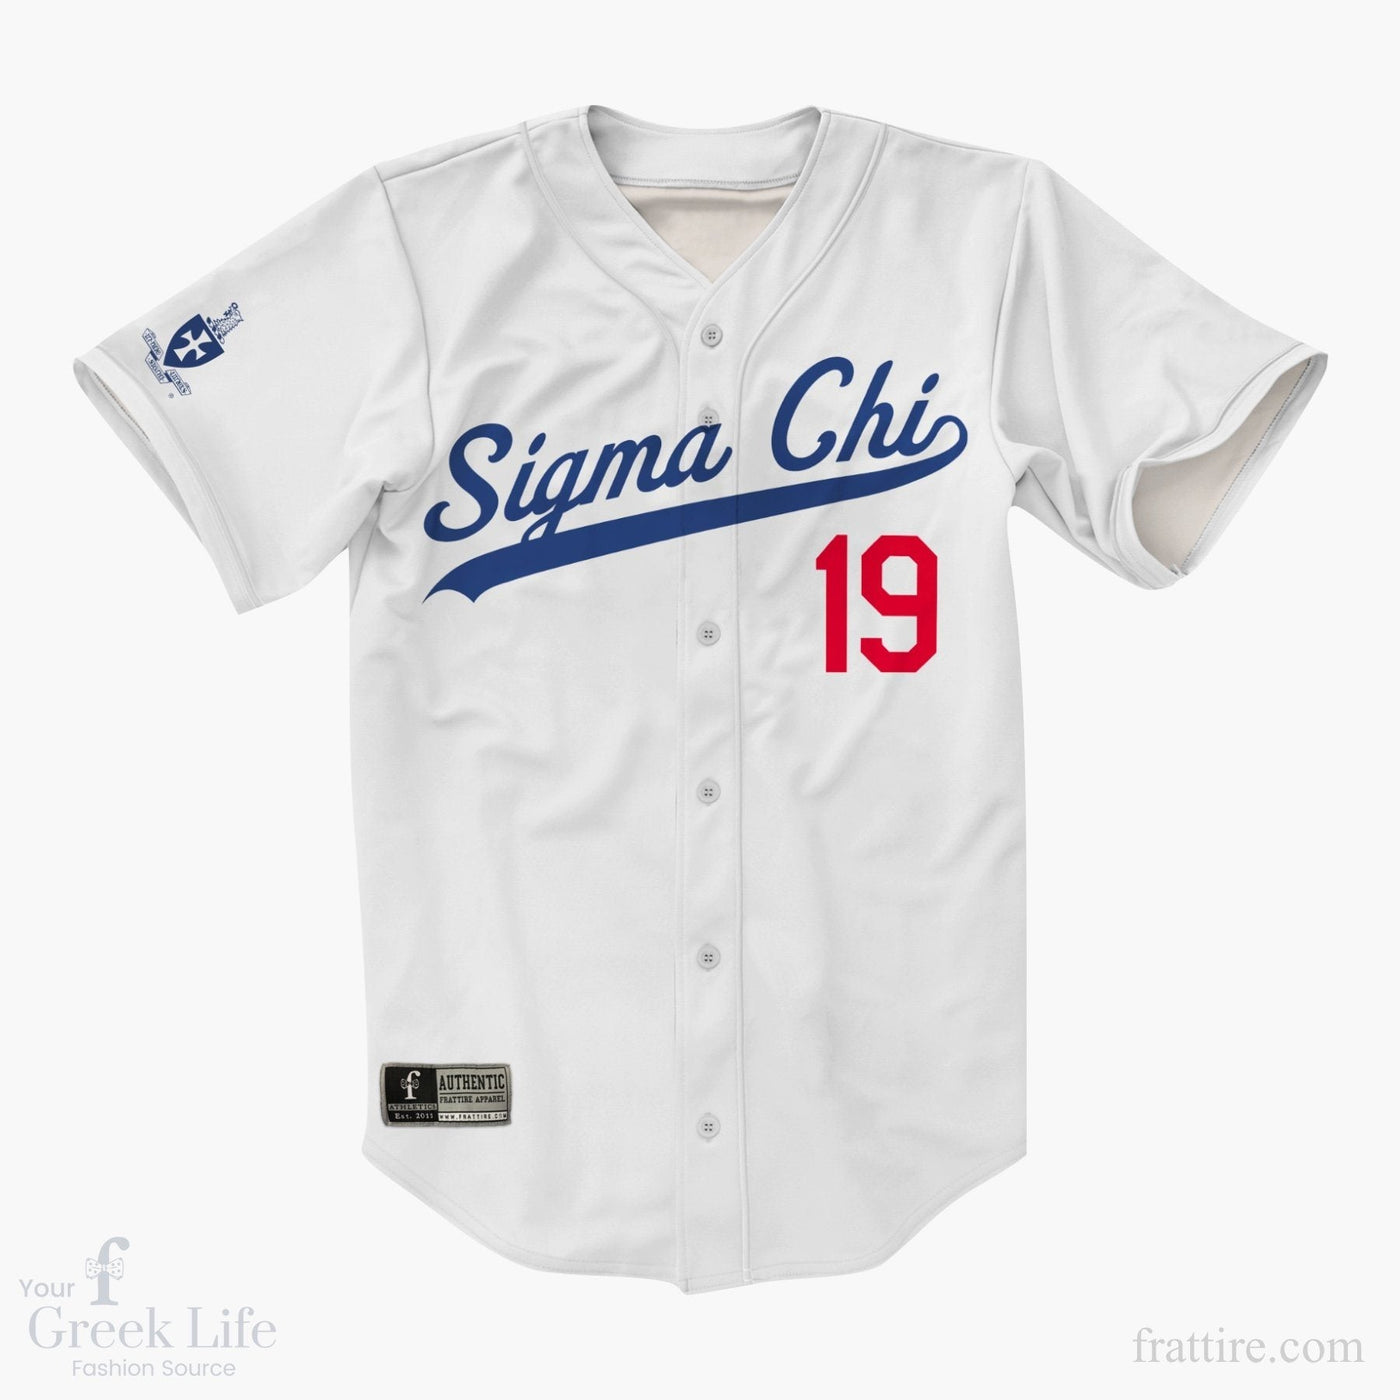 Sigma Chi Baseball Jerseys